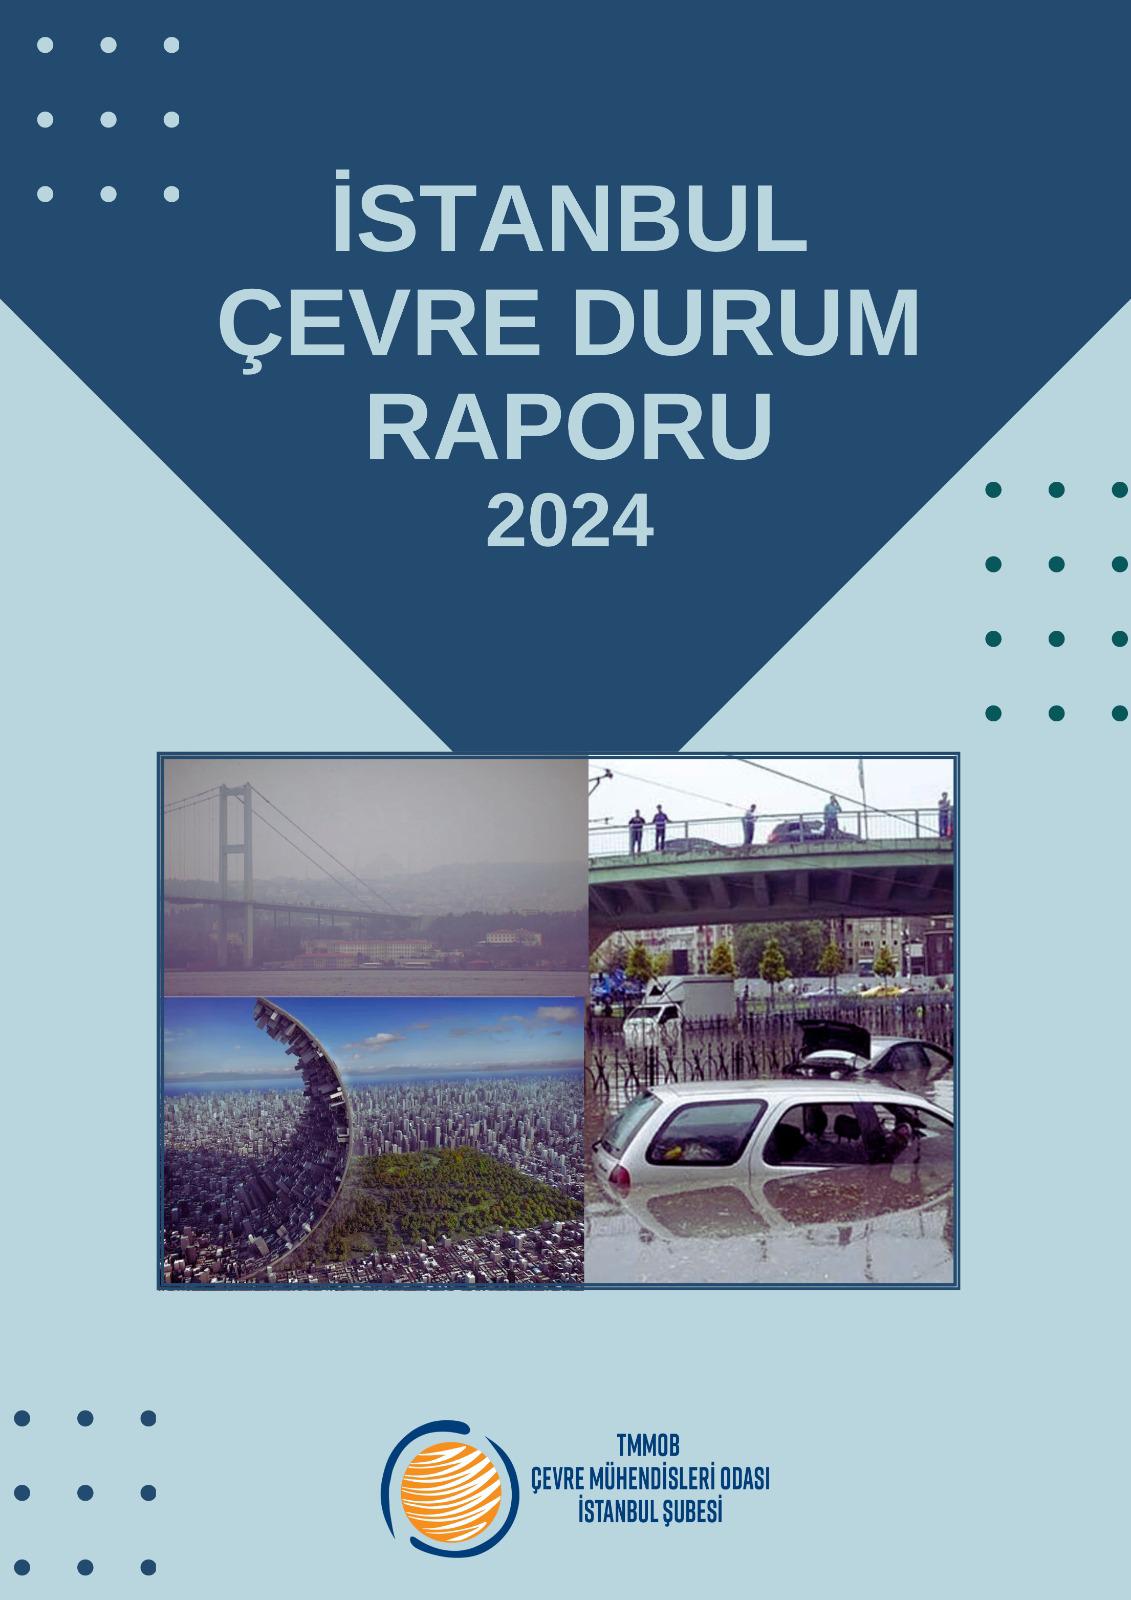 Ekolojik Yıkımla Mücadelede İstanbul’un Gerçekleri: İstanbul Çevre Durum Raporu 2024